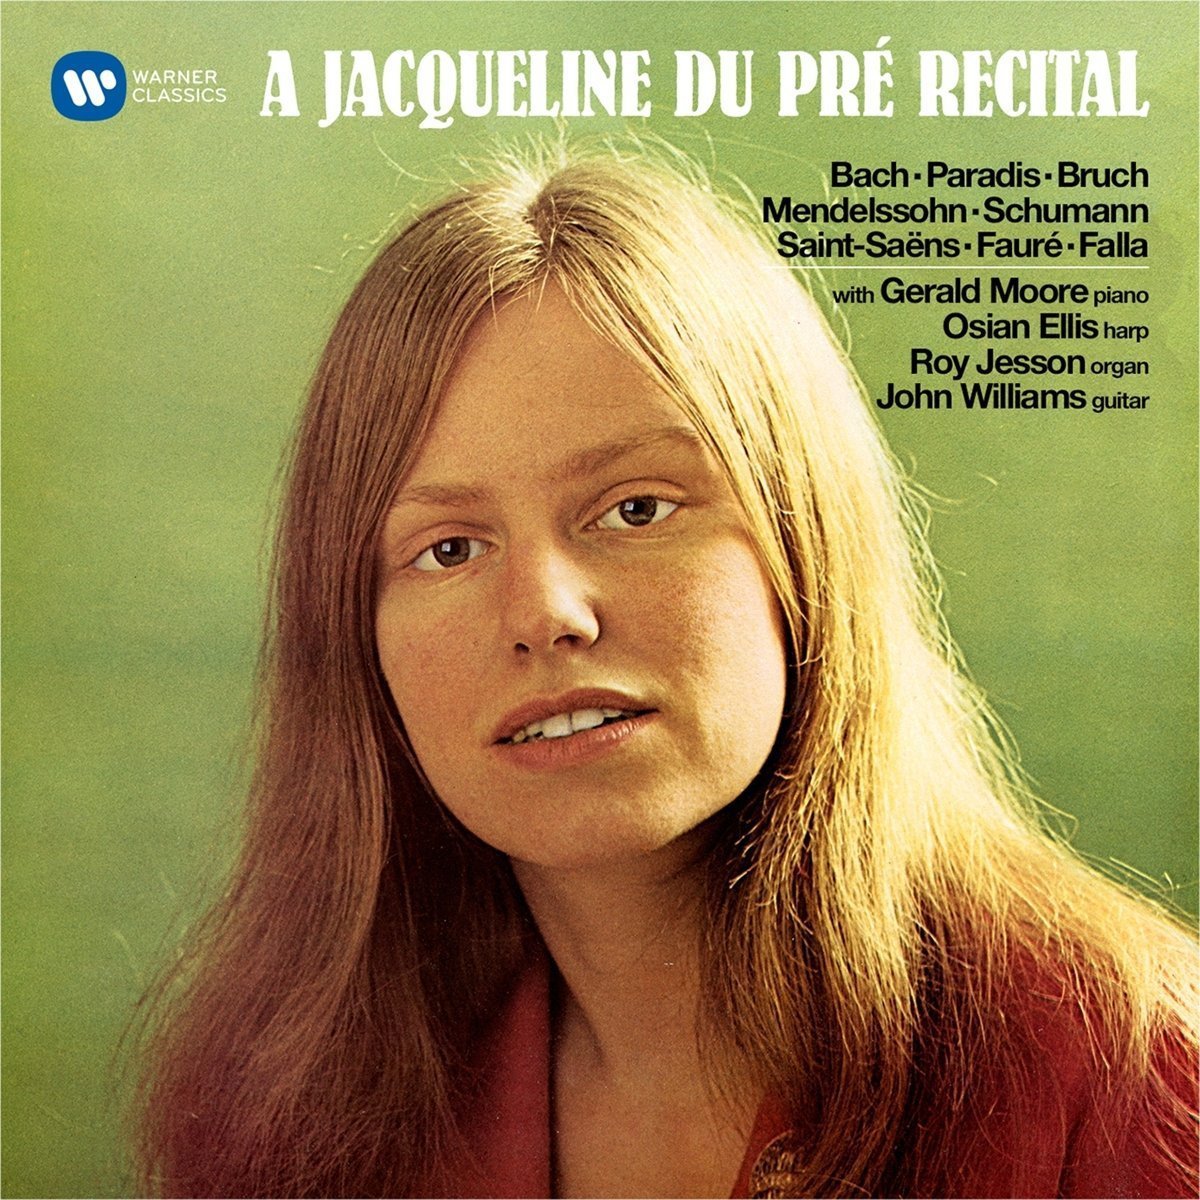 A Jacqueline du Pre Recital | Jacqueline Du Pre image3